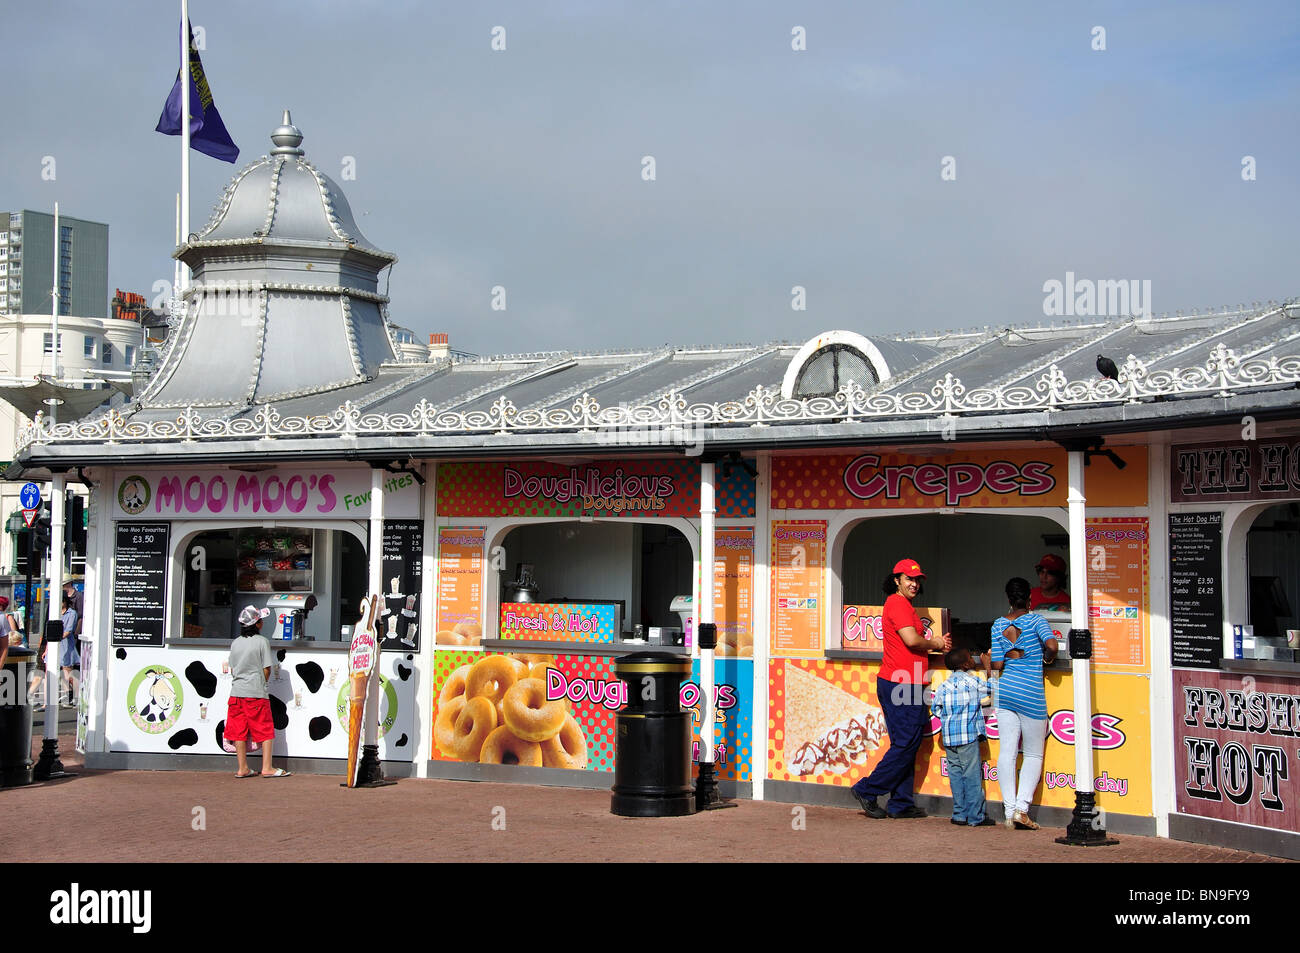 Kiosques d'aliments à emporter à l'entrée de la jetée, la jetée de Brighton, Brighton, East Sussex, Angleterre, Royaume-Uni Banque D'Images